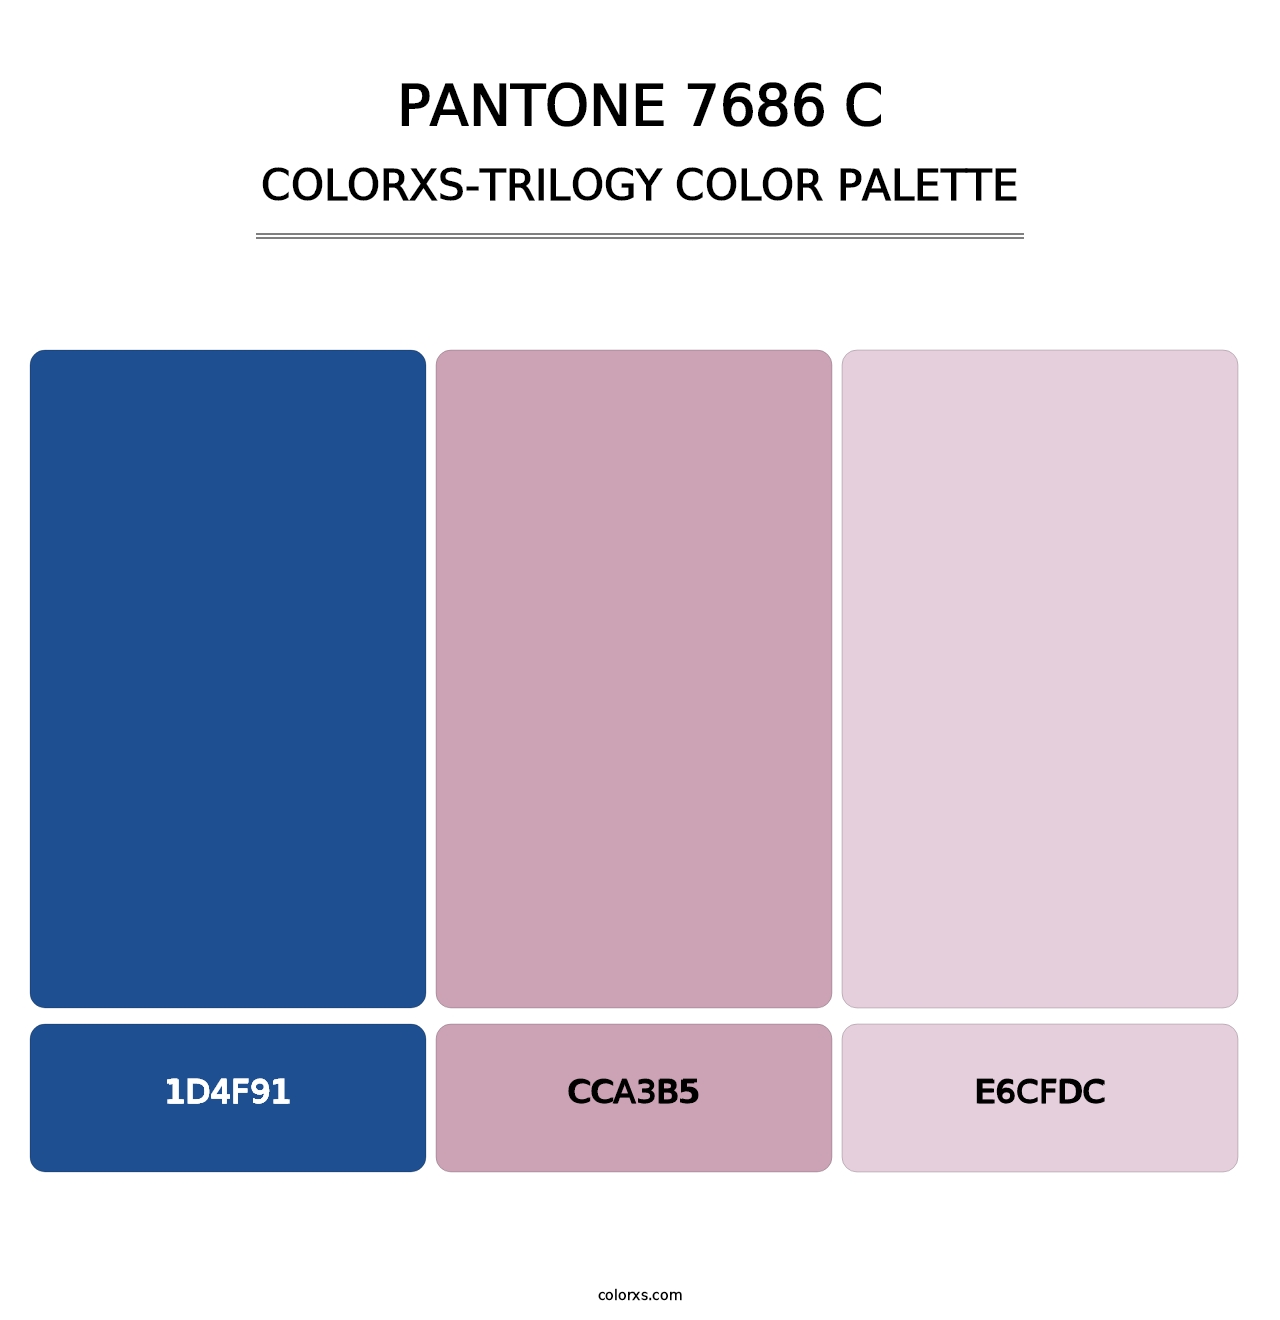 PANTONE 7686 C - Colorxs Trilogy Palette